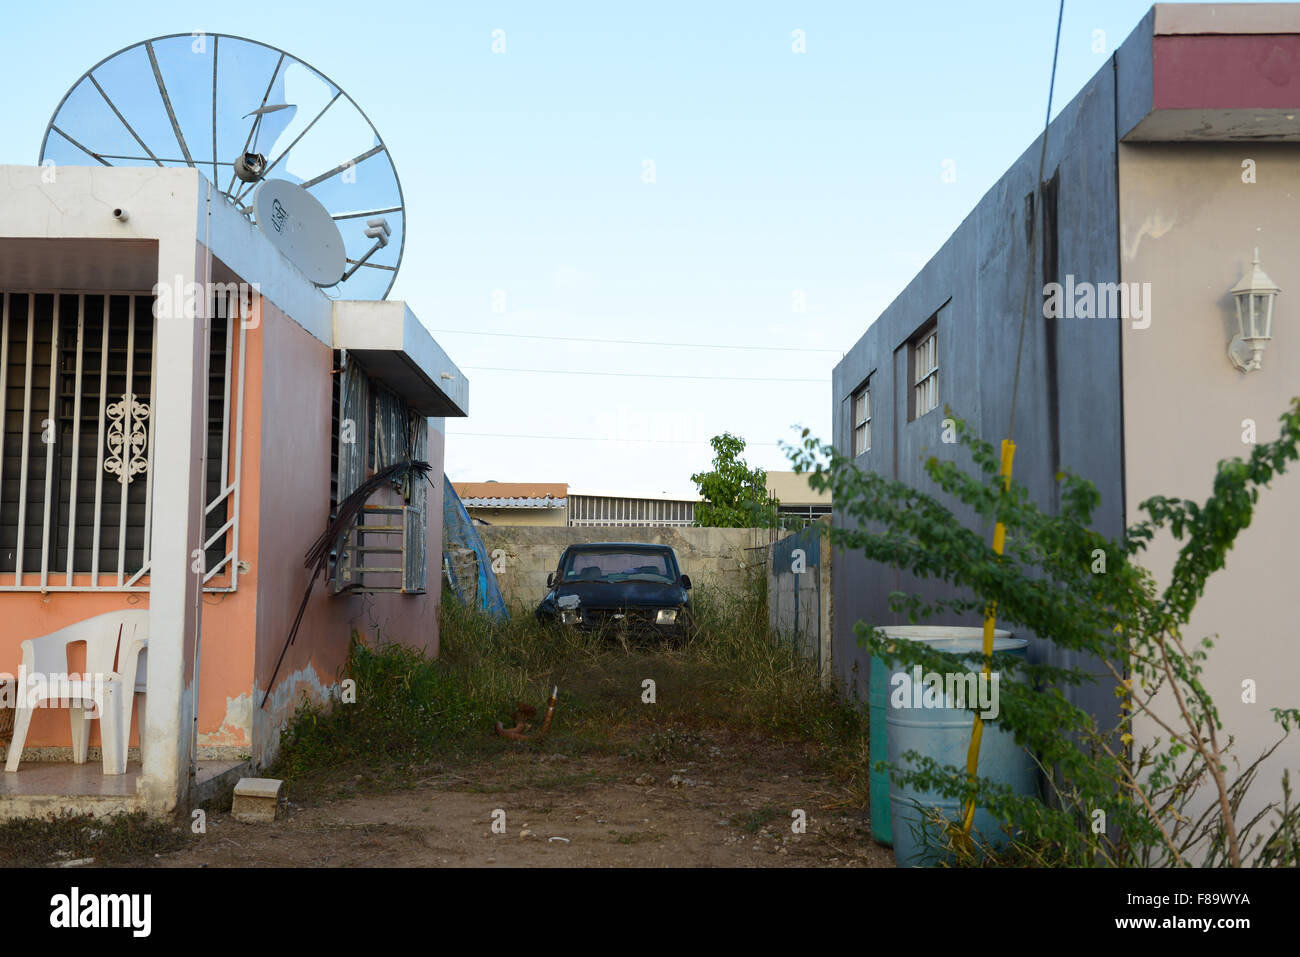 Voiture Clunker abandonné dans une maison privée, jardin. Juana Diaz, Puerto Rico. L'île des Caraïbes. USA territoire. Banque D'Images